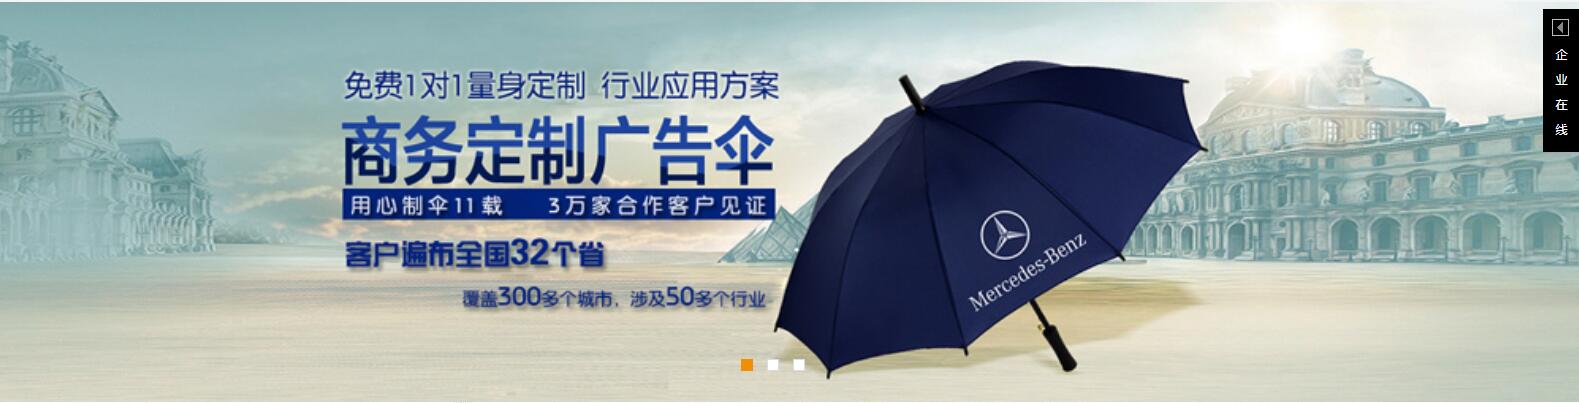 广州广告遮阳伞广州户外遮阳伞定做